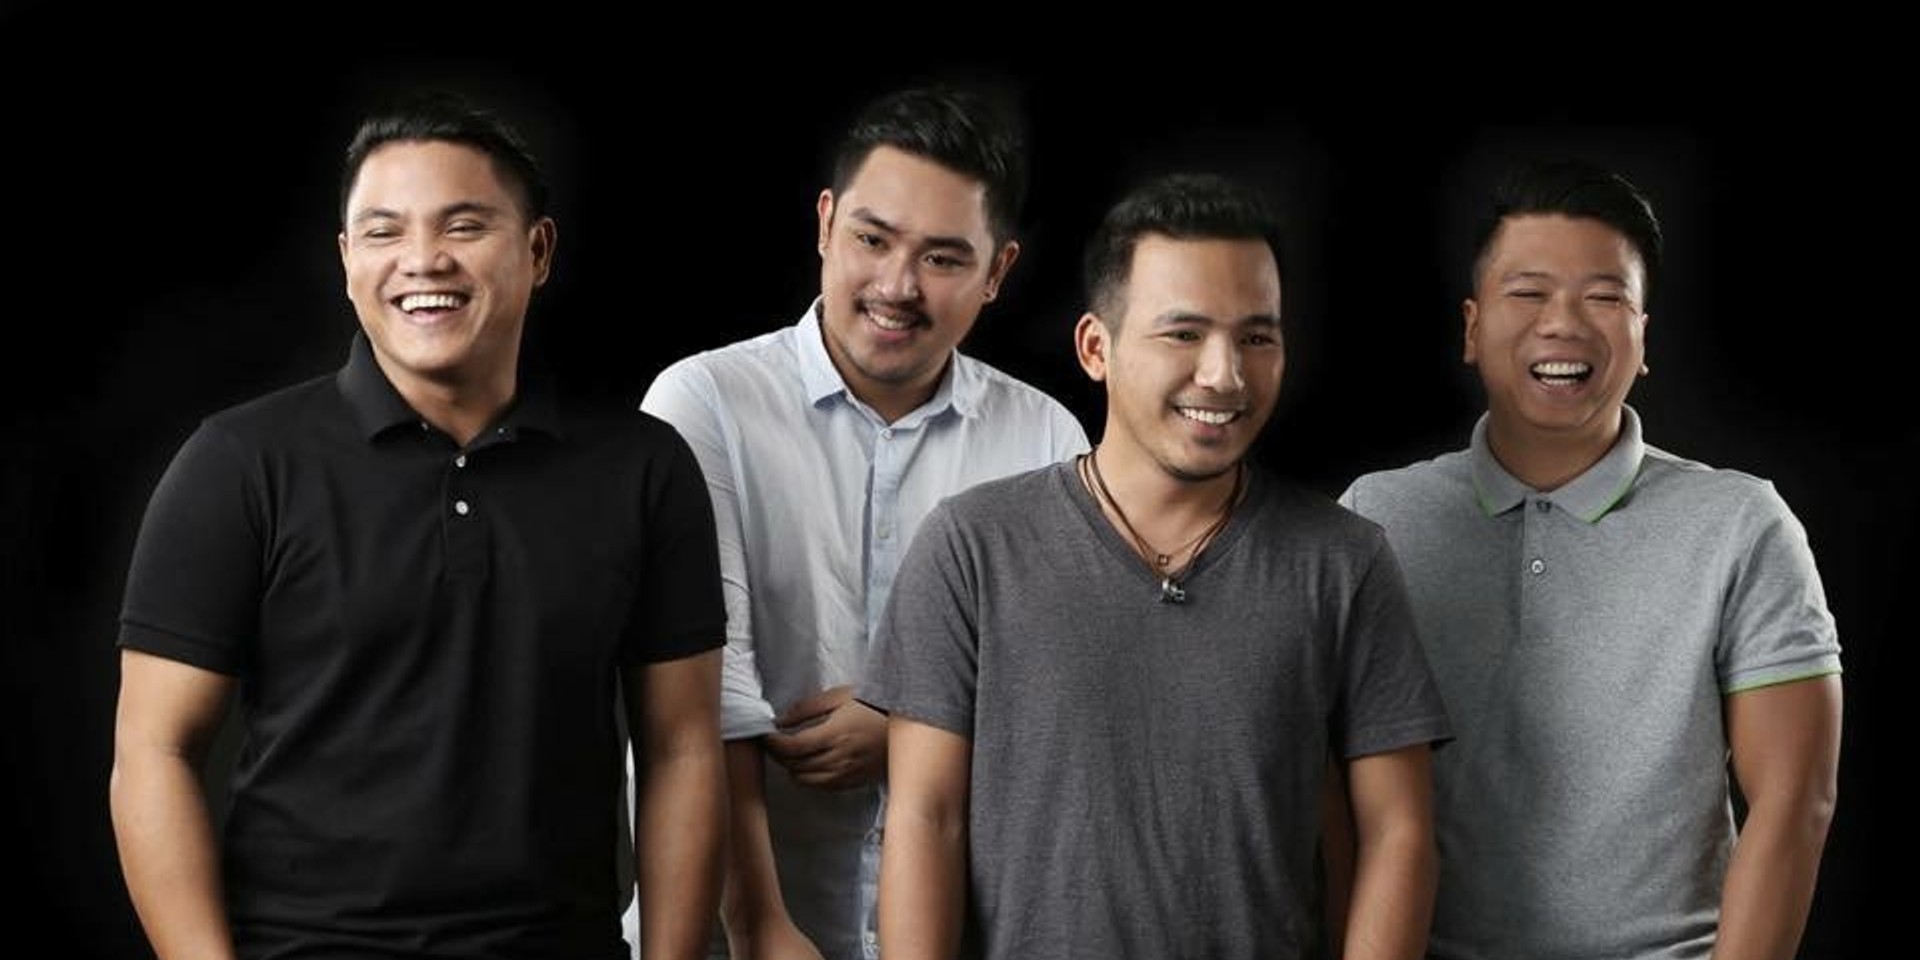 December Avenue to release new single "Sa Ngalan ng Pag-ibig"